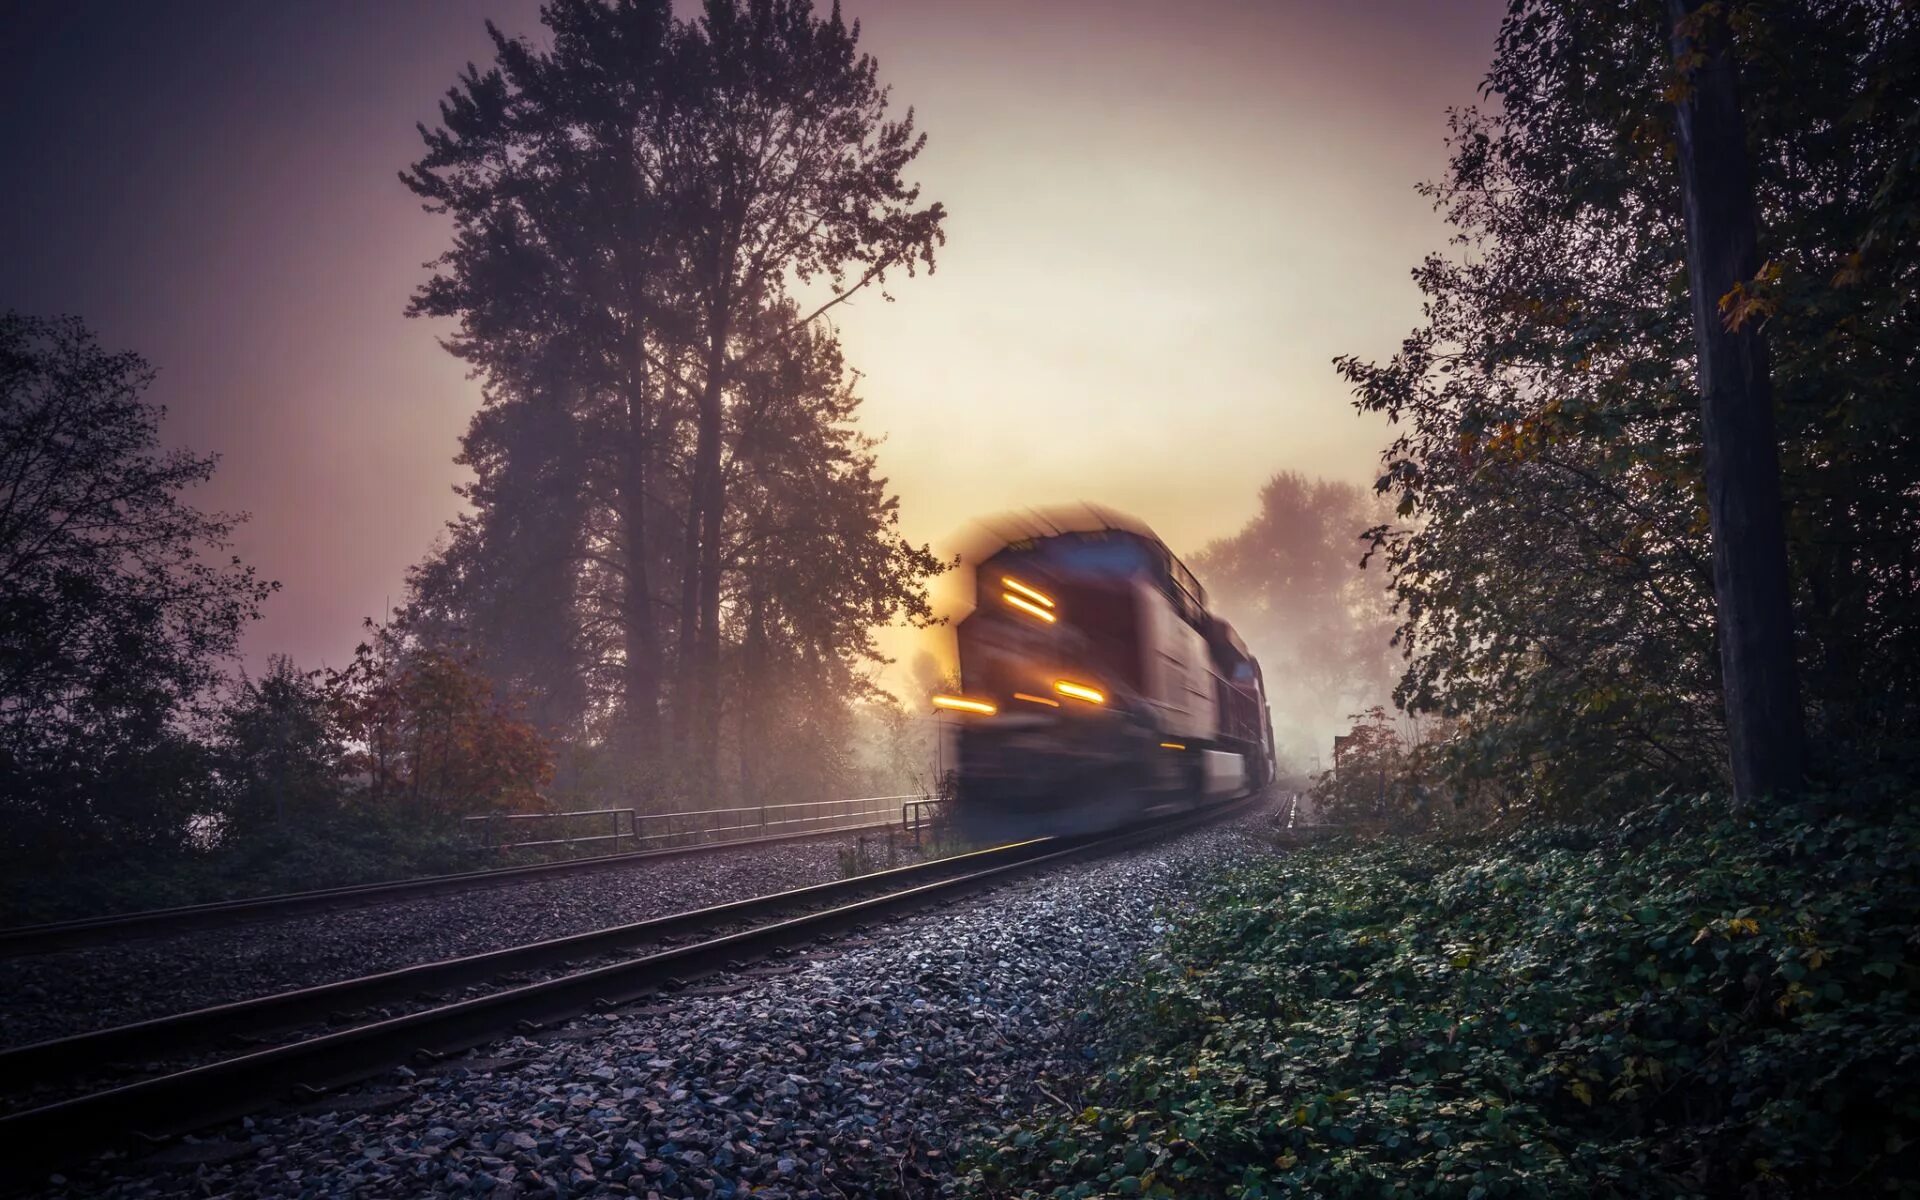 Уходящая железная дорога. Уходящий поезд. Пейзаж с железной дорогой. Железная дорога в тумане. Красивый поезд.